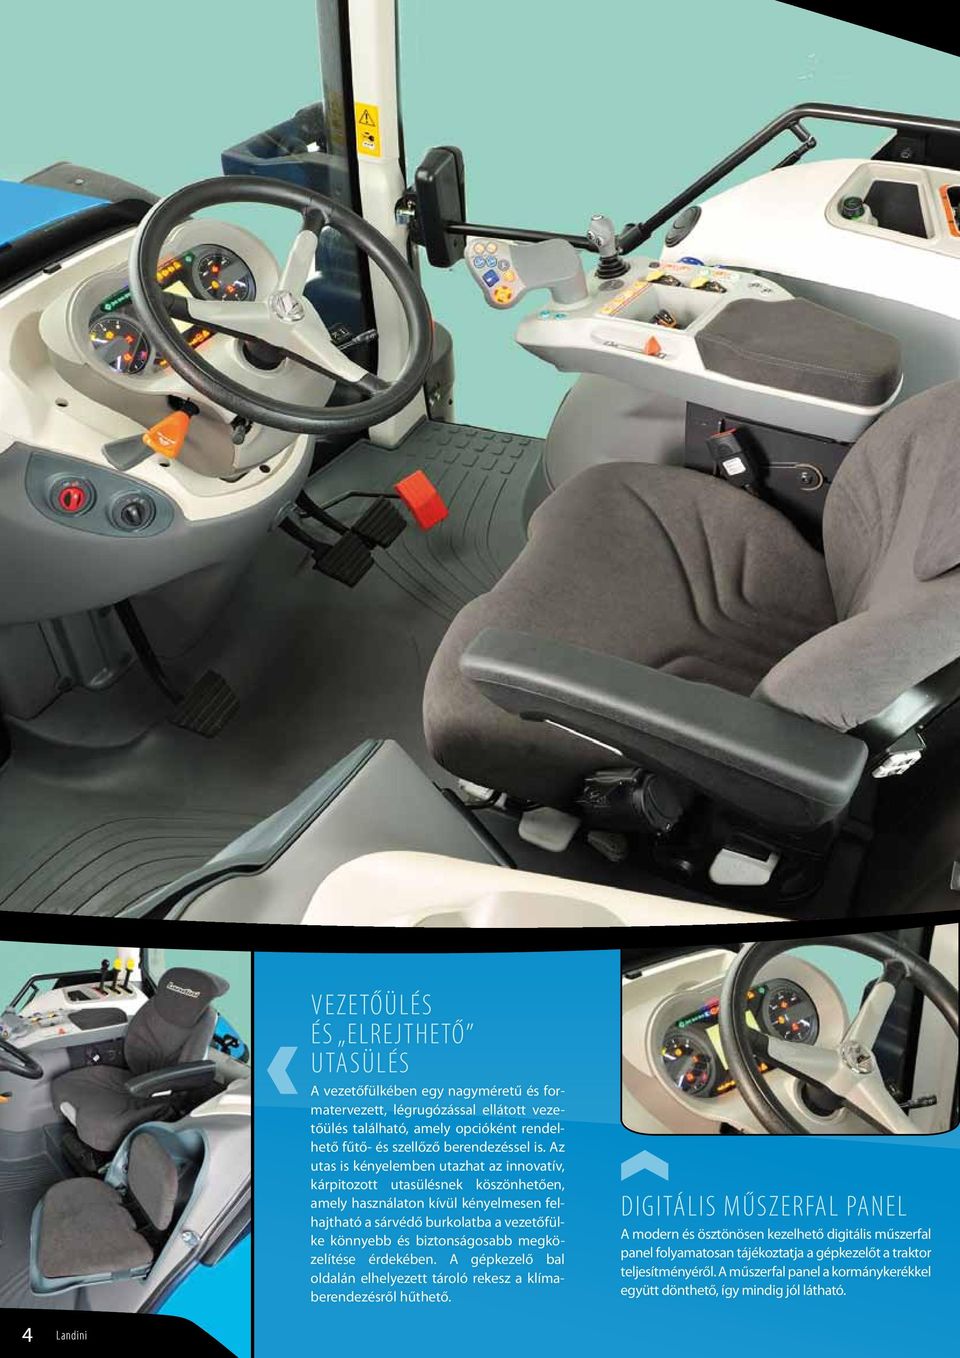 Az utas is kényelemben utazhat az innovatív, kárpitozott utasülésnek köszönhetően, amely használaton kívül kényelmesen felhajtható a sárvédő burkolatba a vezetőfülke könnyebb és